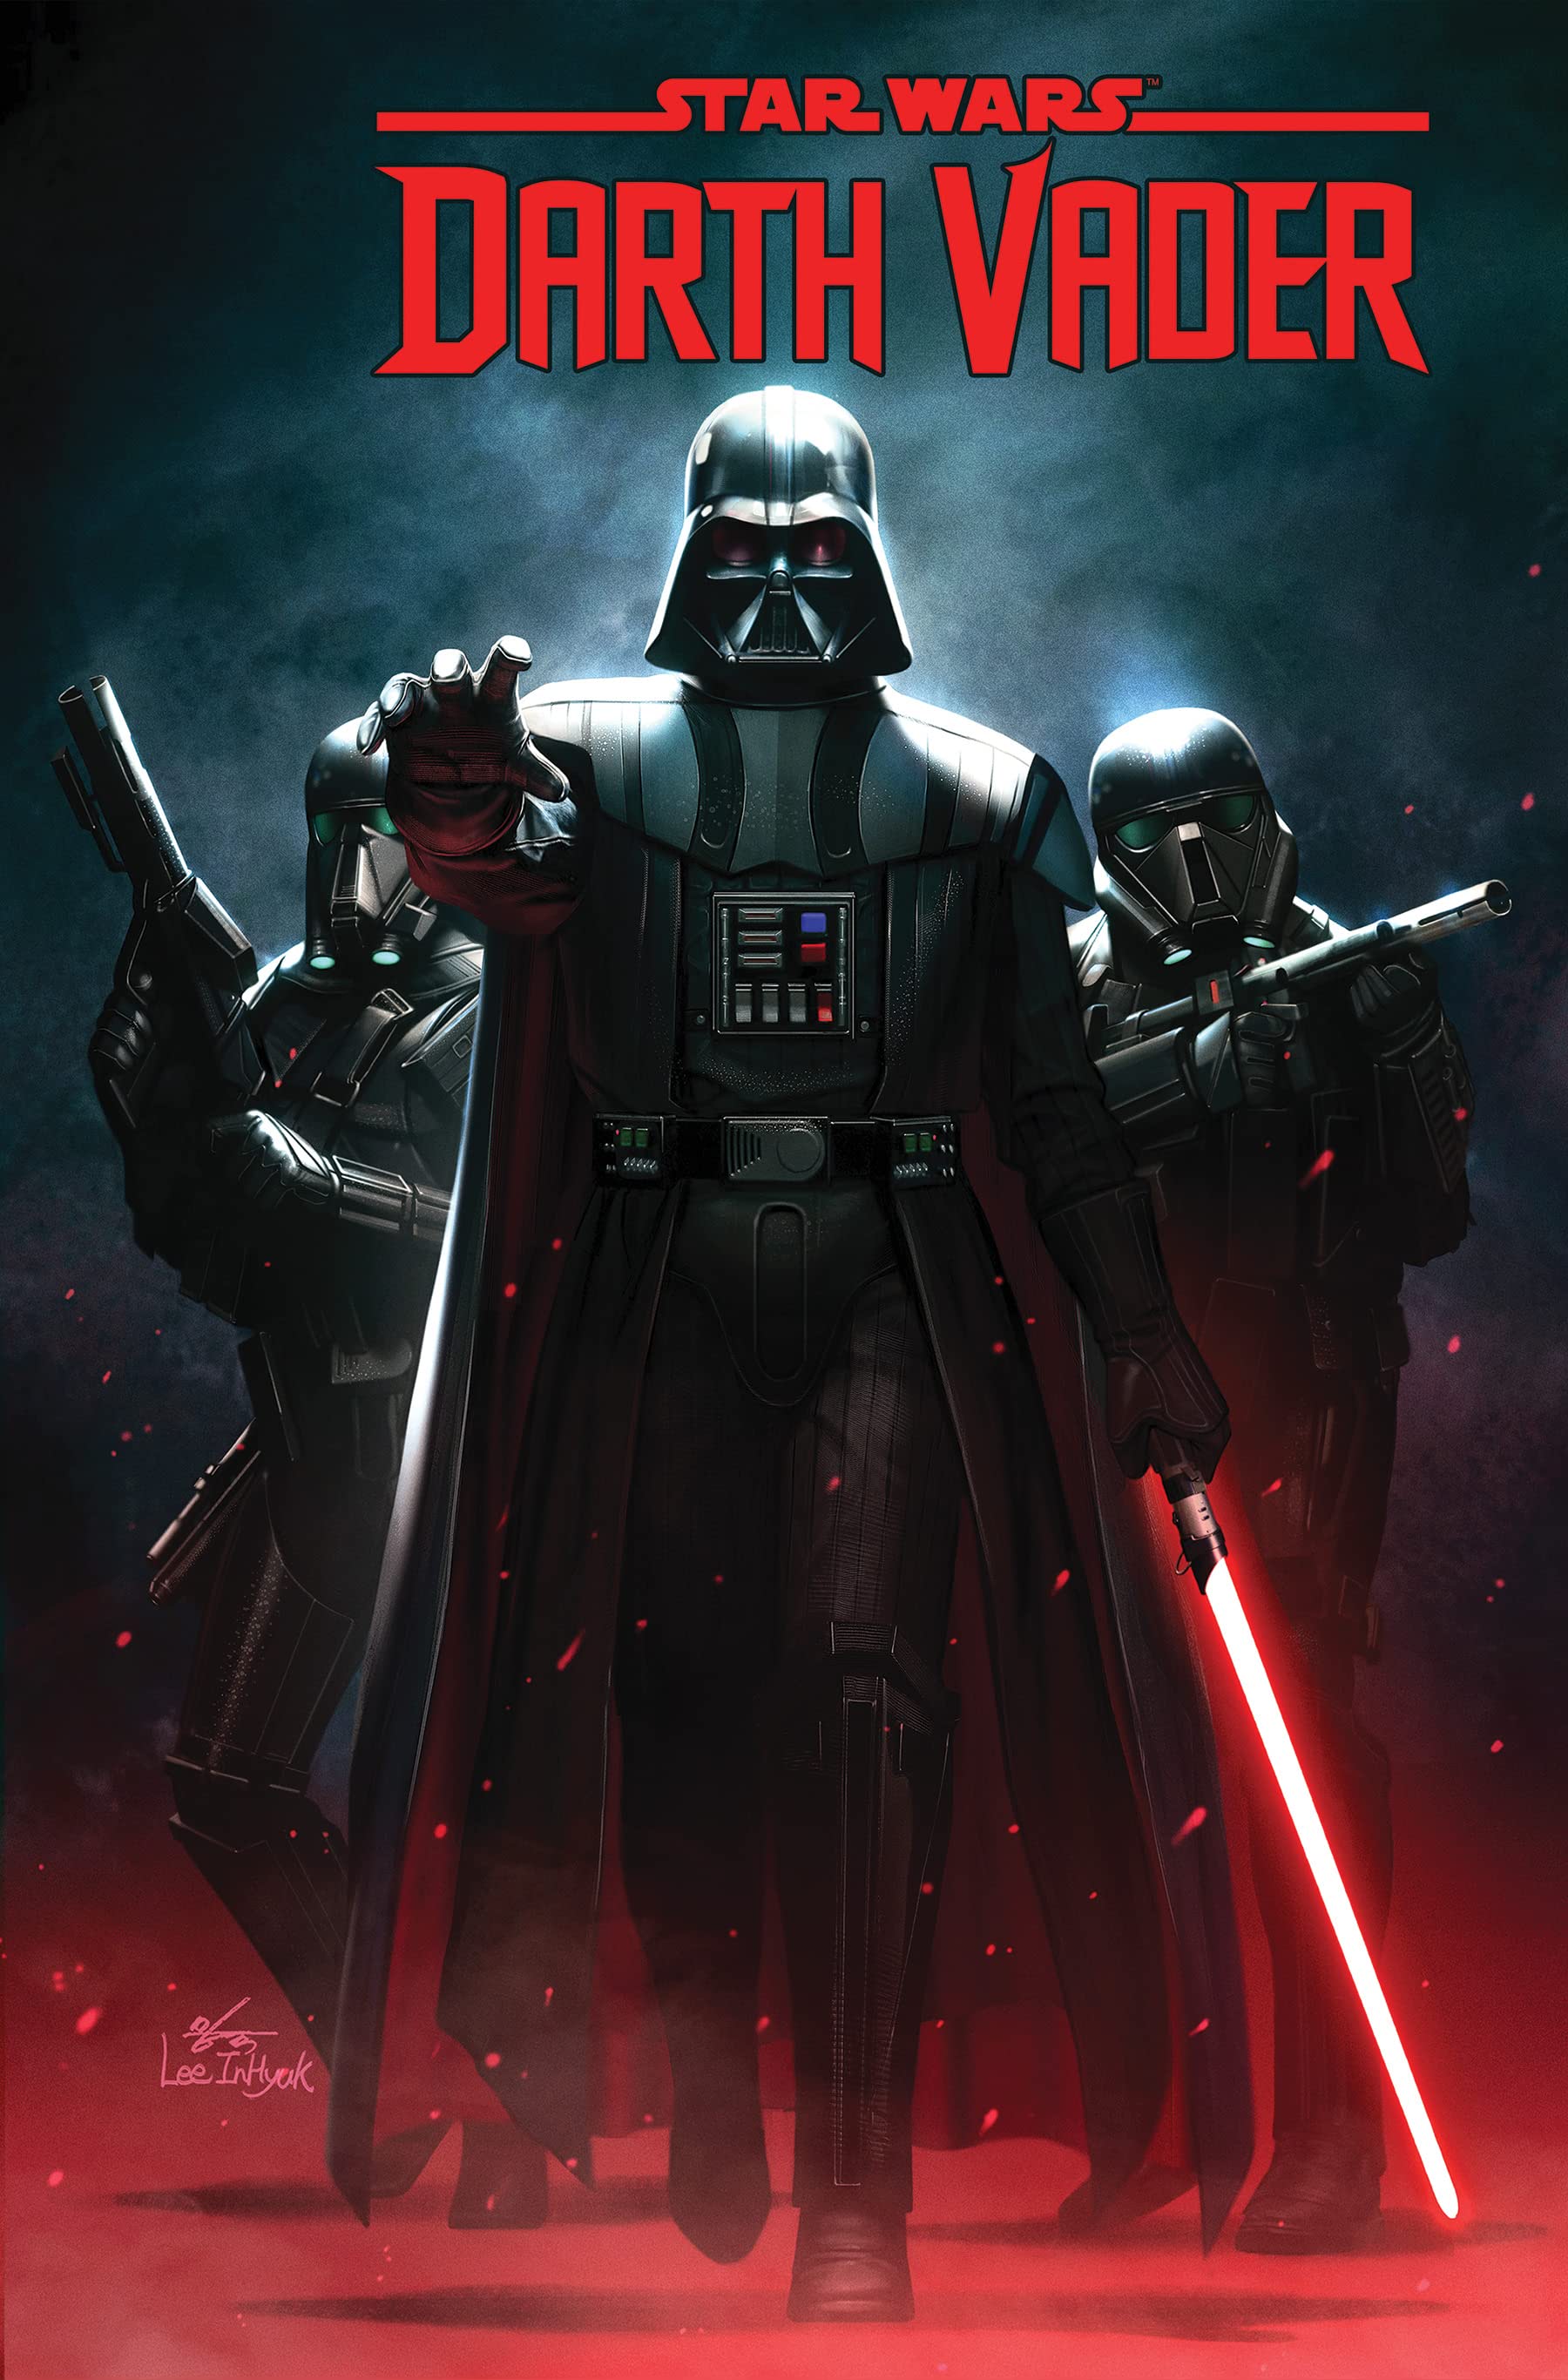 Wars: Darth Vader (2020) | | Fandom